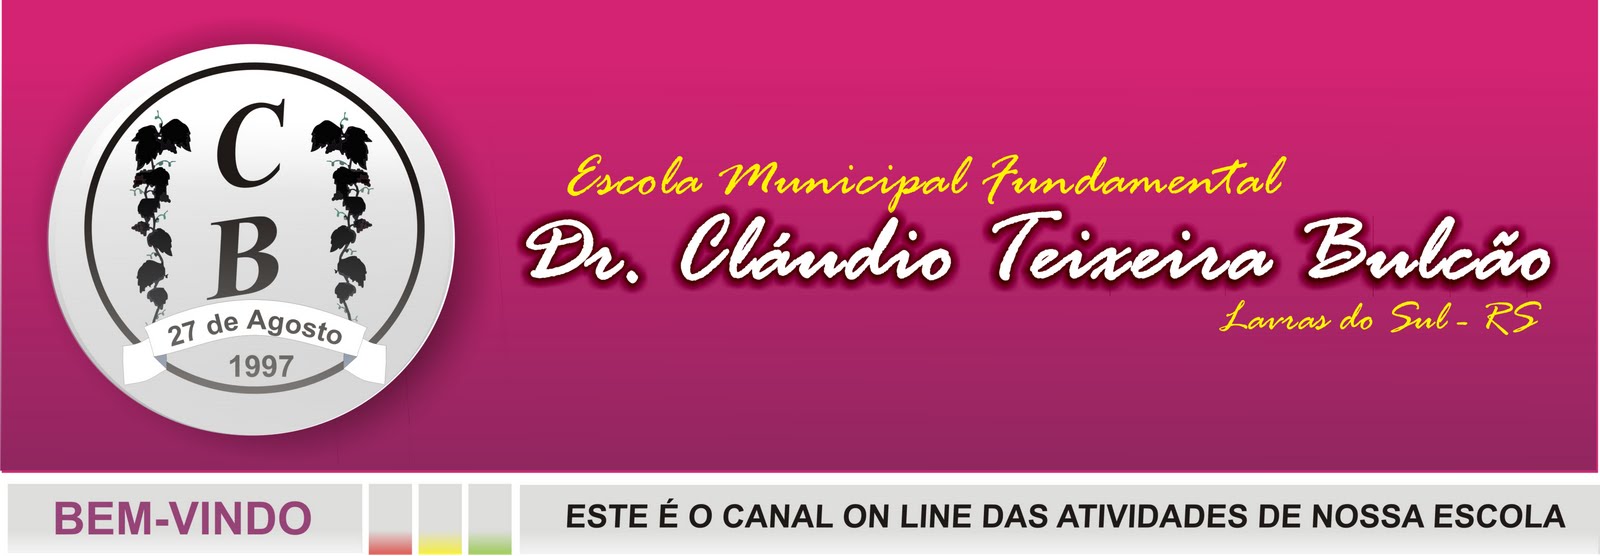 E. M. F. Dr. Cláudio Teixeira Bulcão